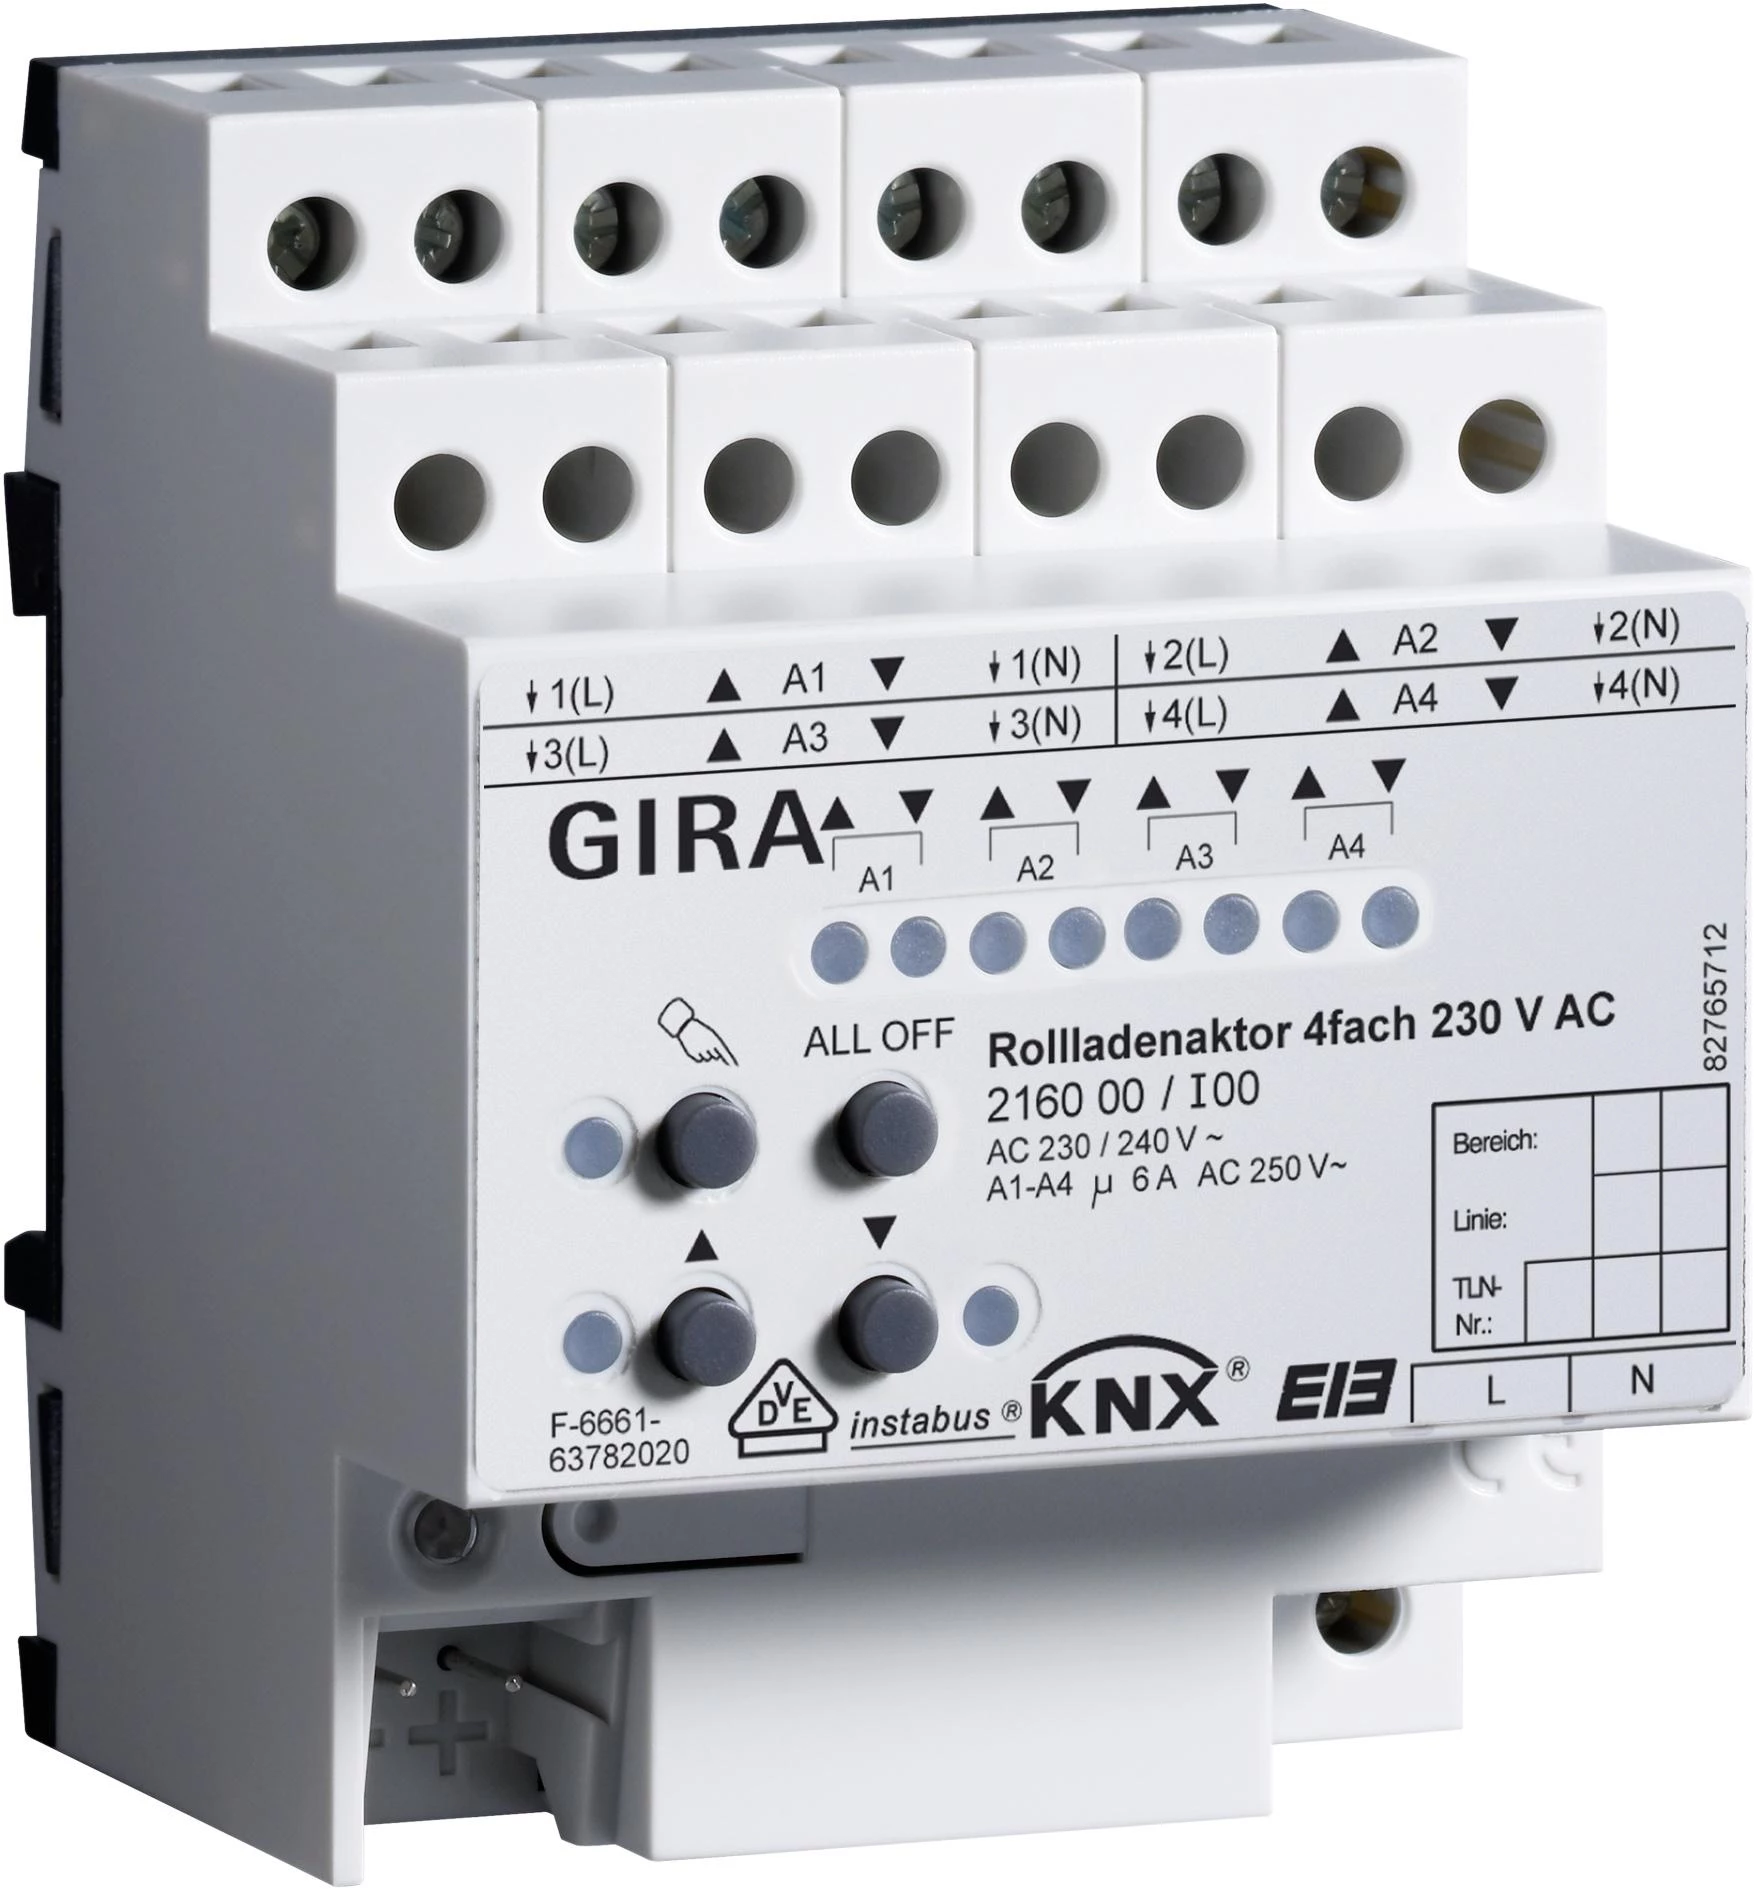  артикул 216000 название Gira KNX Устройство управления жалюзи, 4-канальн., 230V ~ с ручным управлением